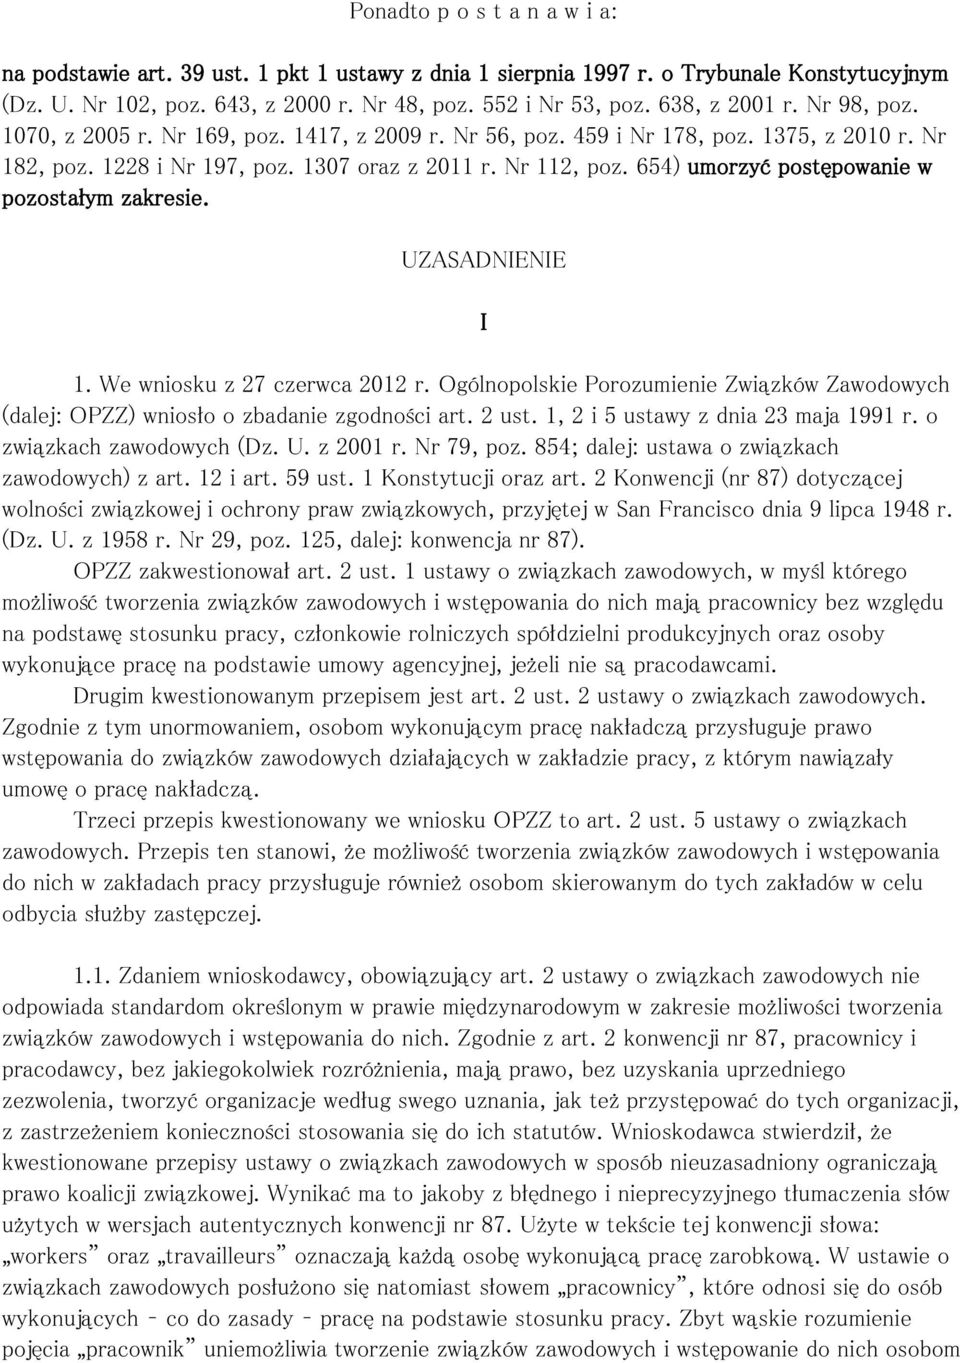 654) umorzyć postępowanie w pozostałym zakresie. UZASADNIENIE 1. We wniosku z 27 czerwca 2012 r. Ogólnopolskie Porozumienie Związków Zawodowych (dalej: OPZZ) wniosło o zbadanie zgodności art. 2 ust.